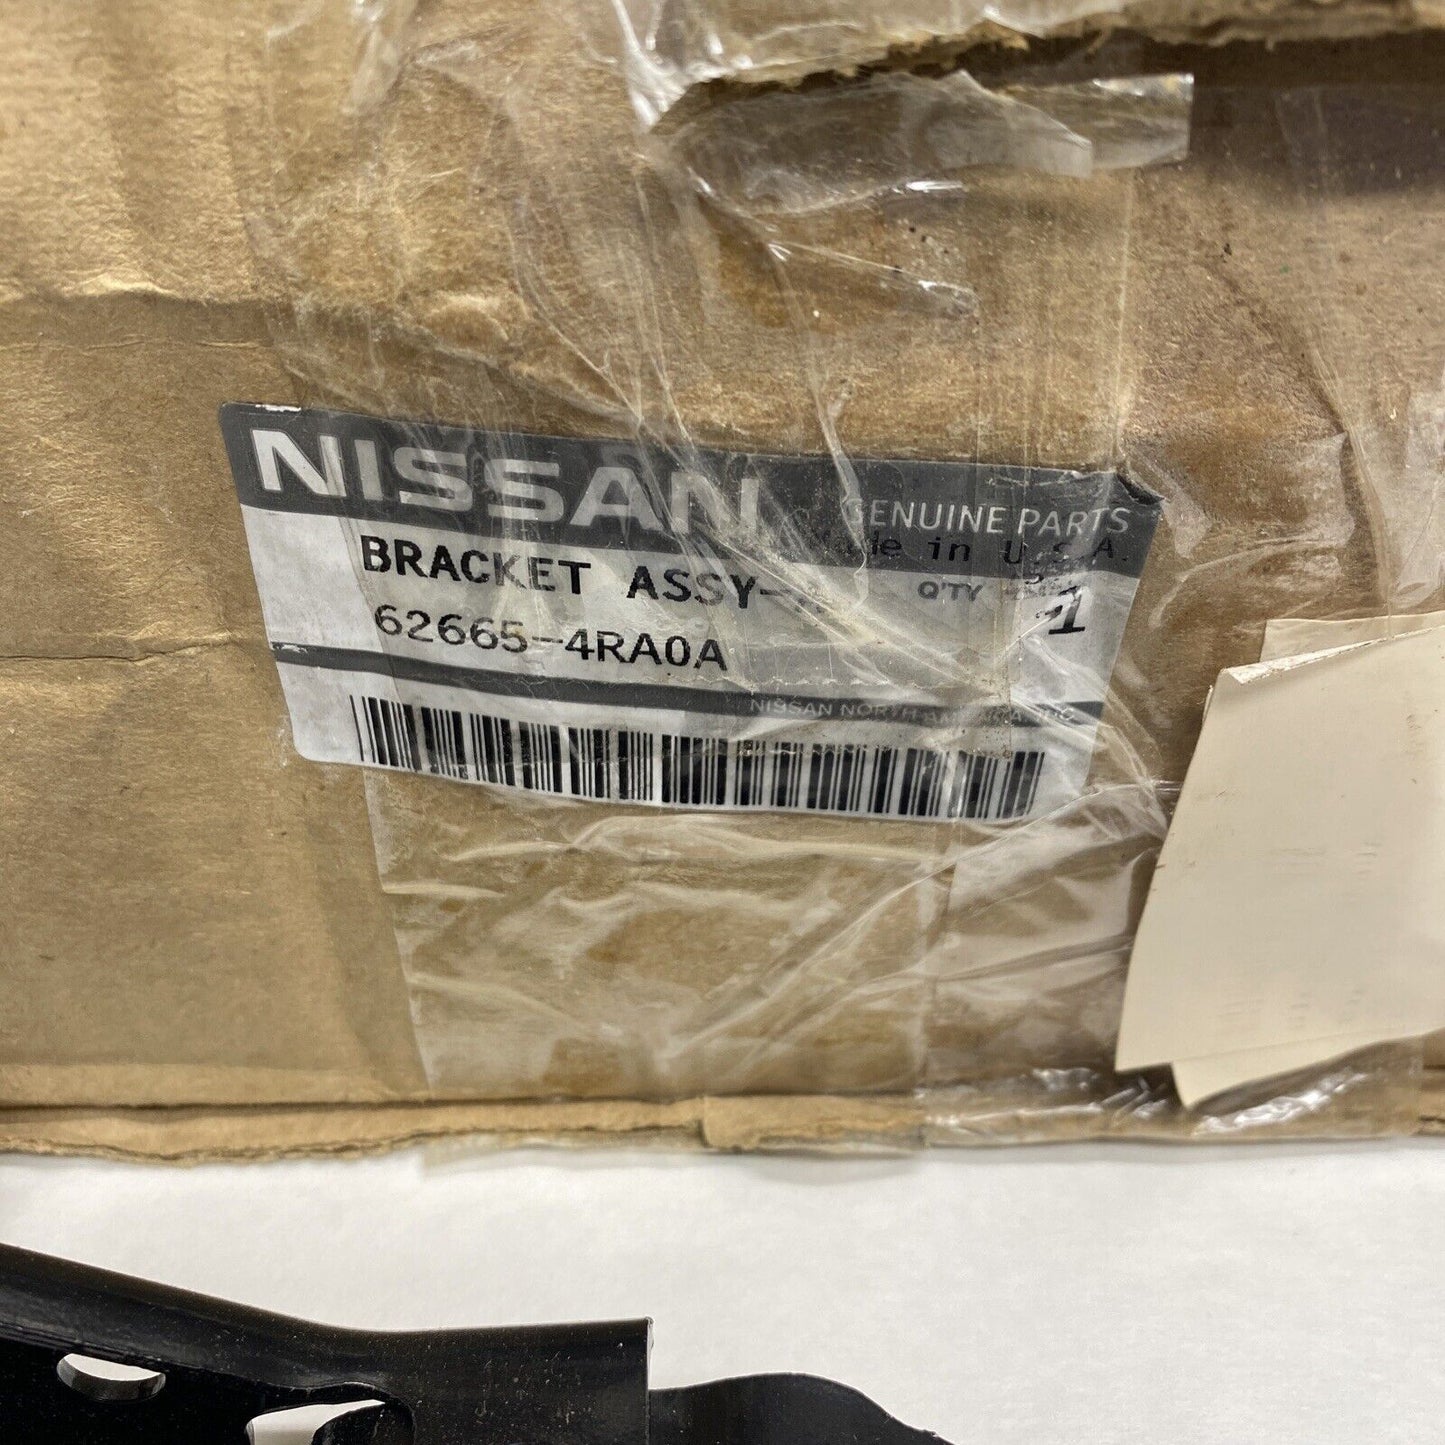 New OEM Nissan Bracket Left Driver Side 626654RA0A